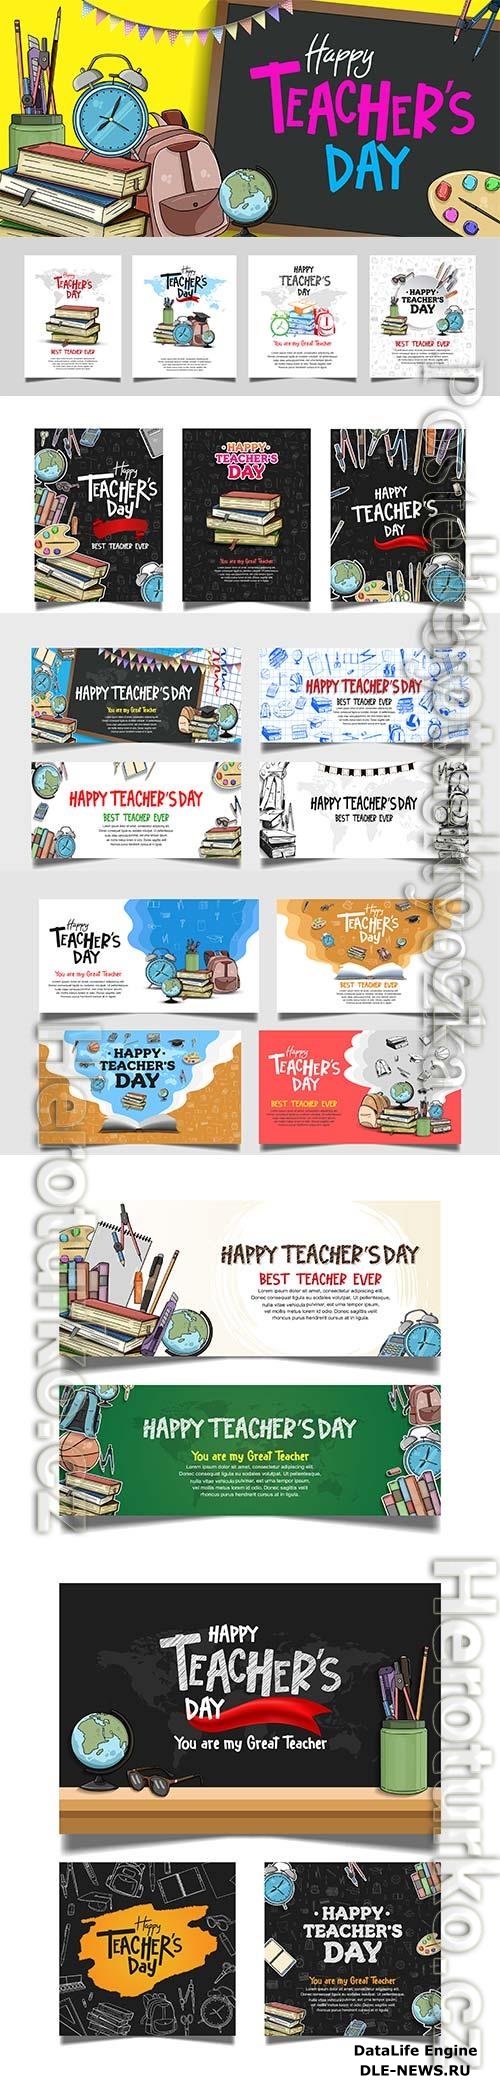 Happy teachers day vector banner